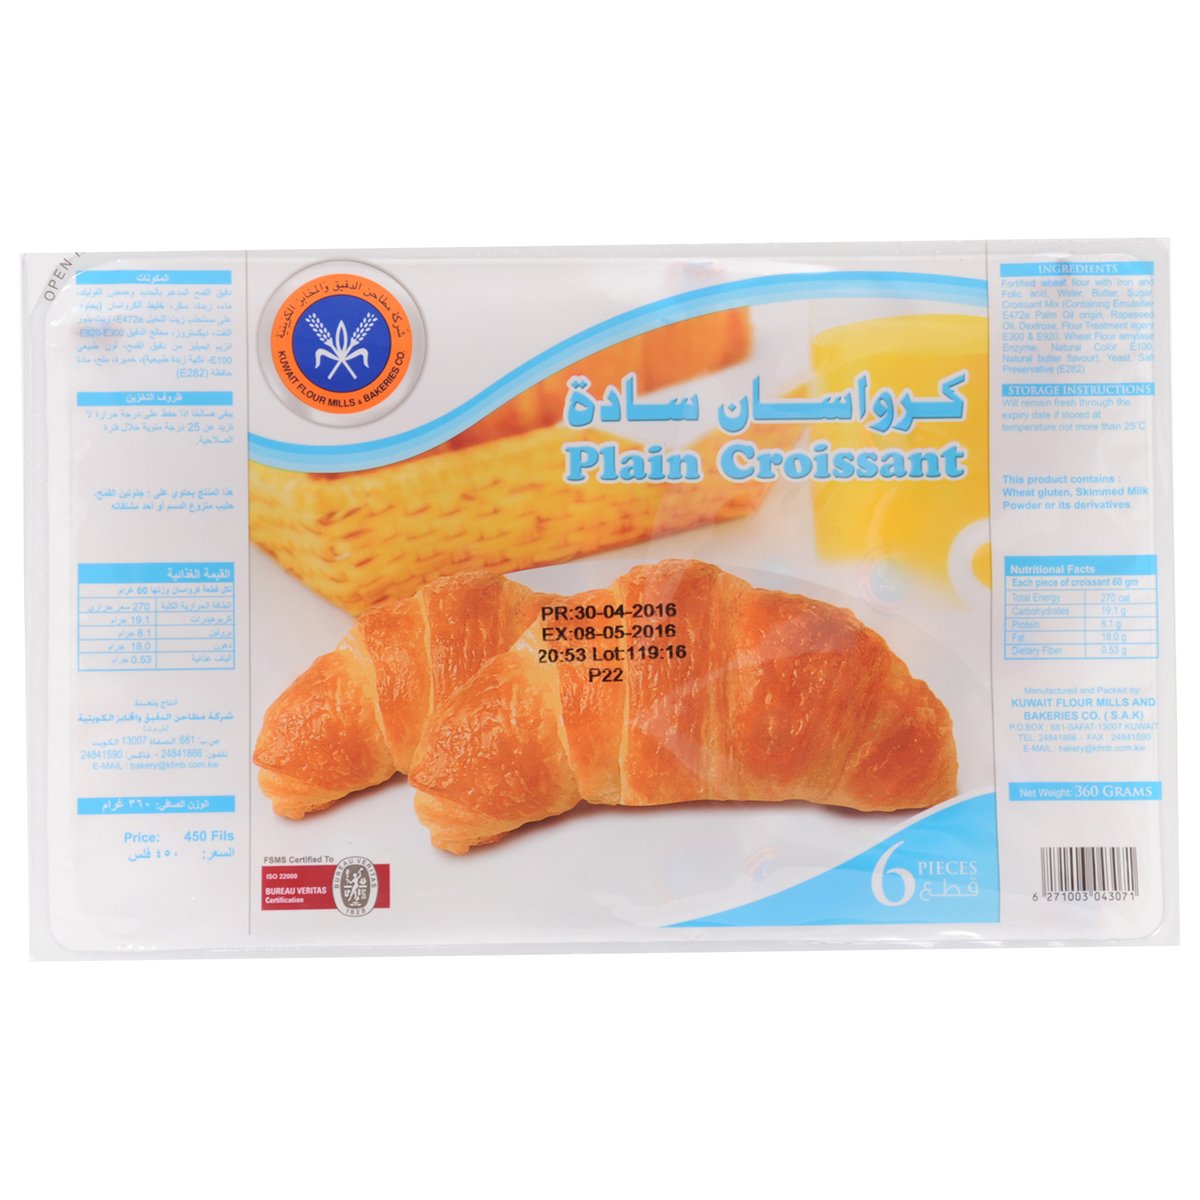 KFMBC Plain Croissant 5 pcs